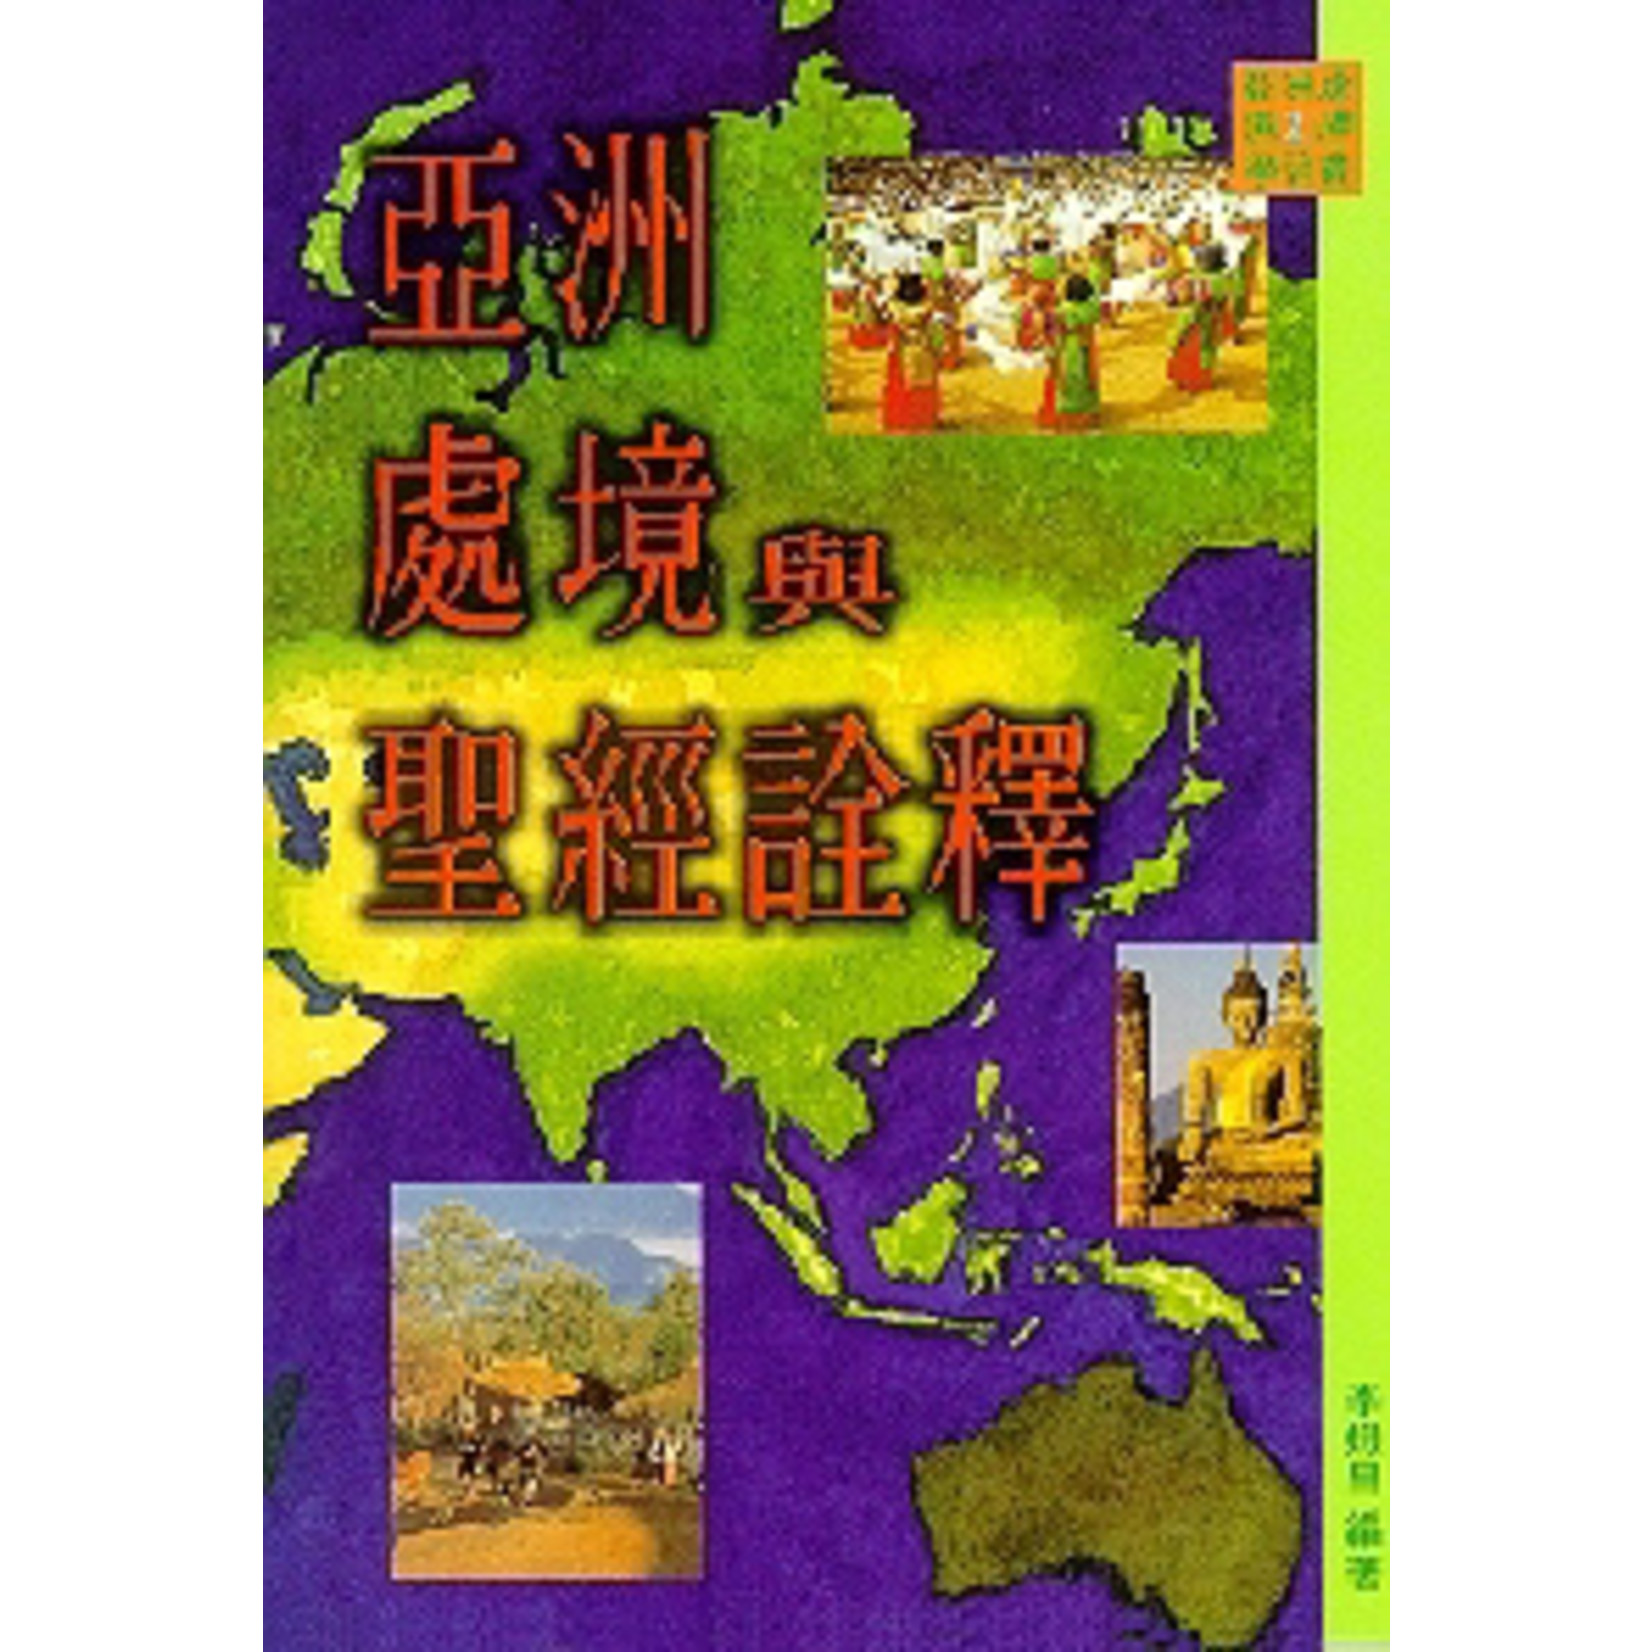 基督教文藝(香港) Chinese Christian Literature Council 亞洲處境與聖經註釋